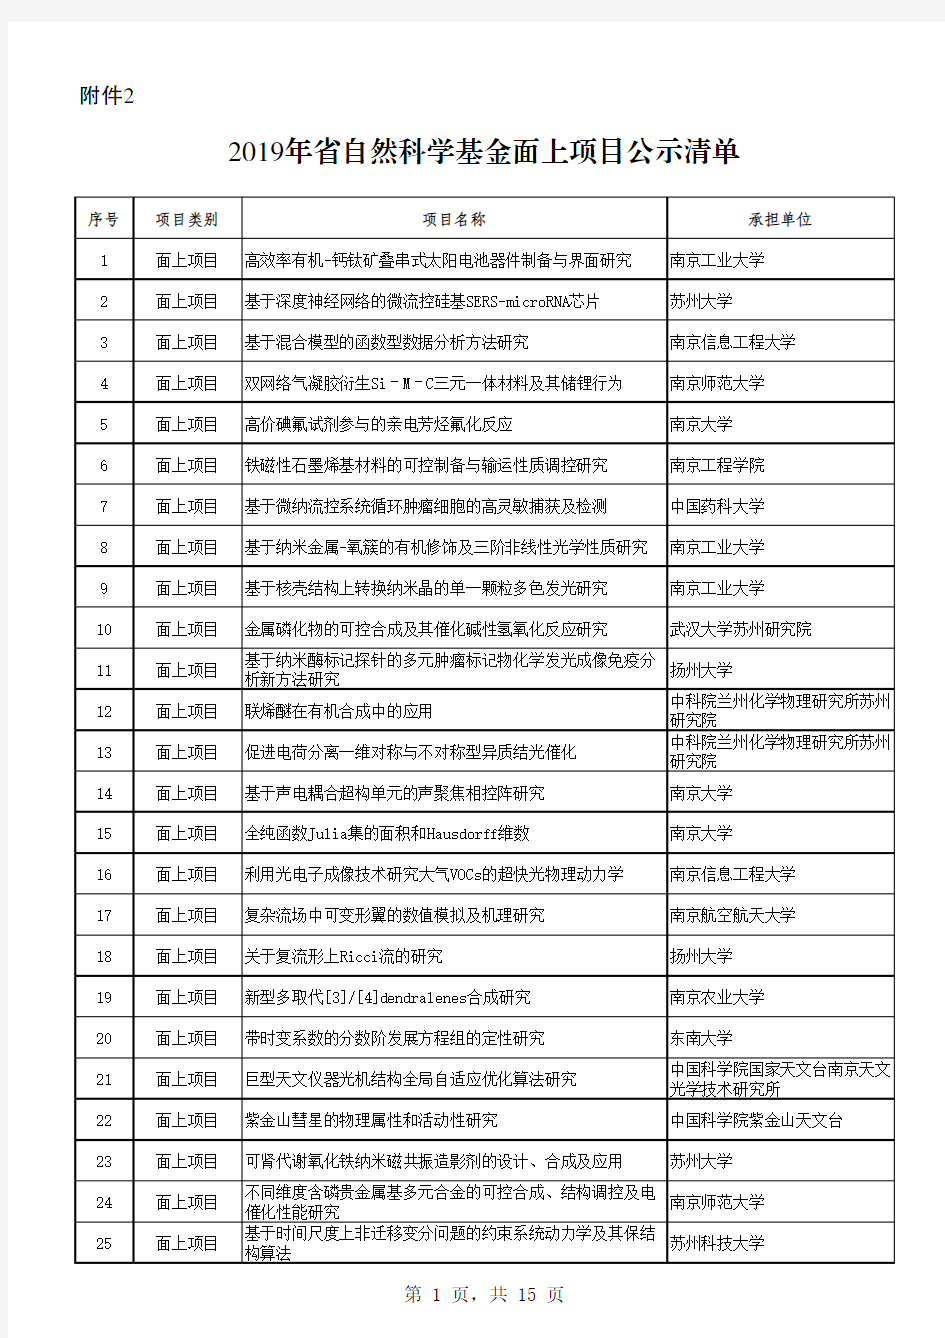 2019年江苏省自然科学基金面上项目公示清单